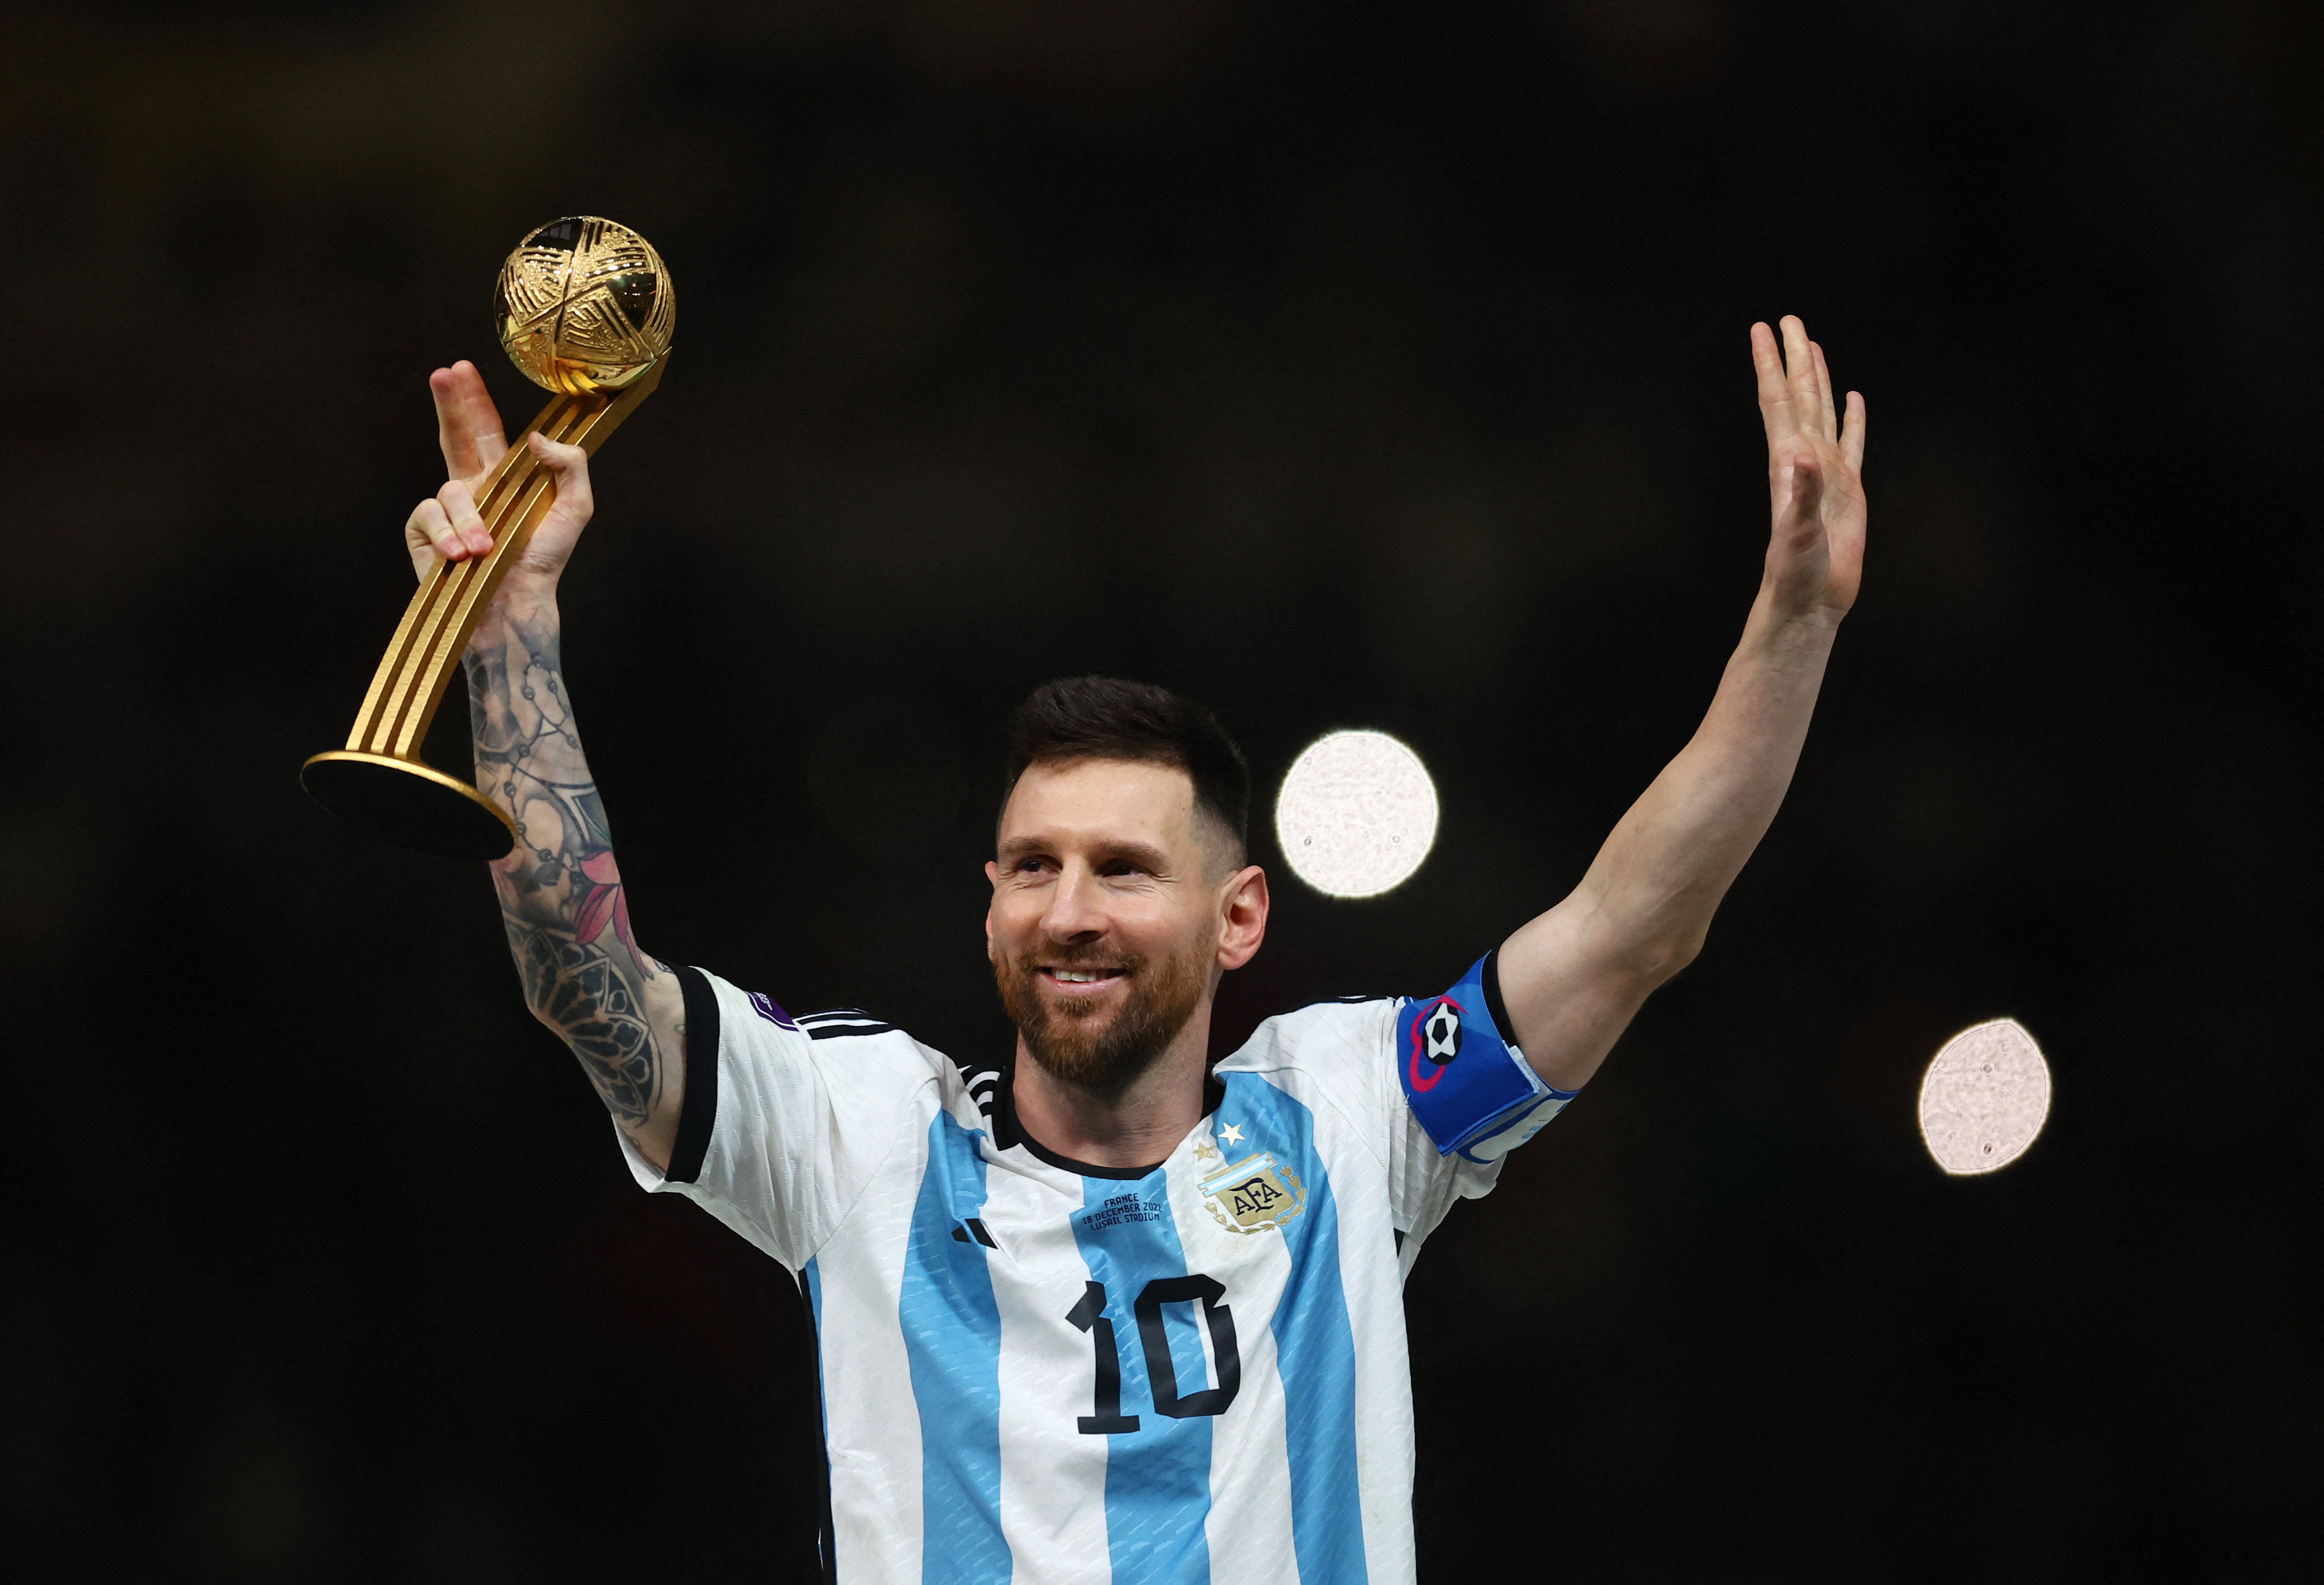 Al fin Messi campeón, Dios reparó su “error”